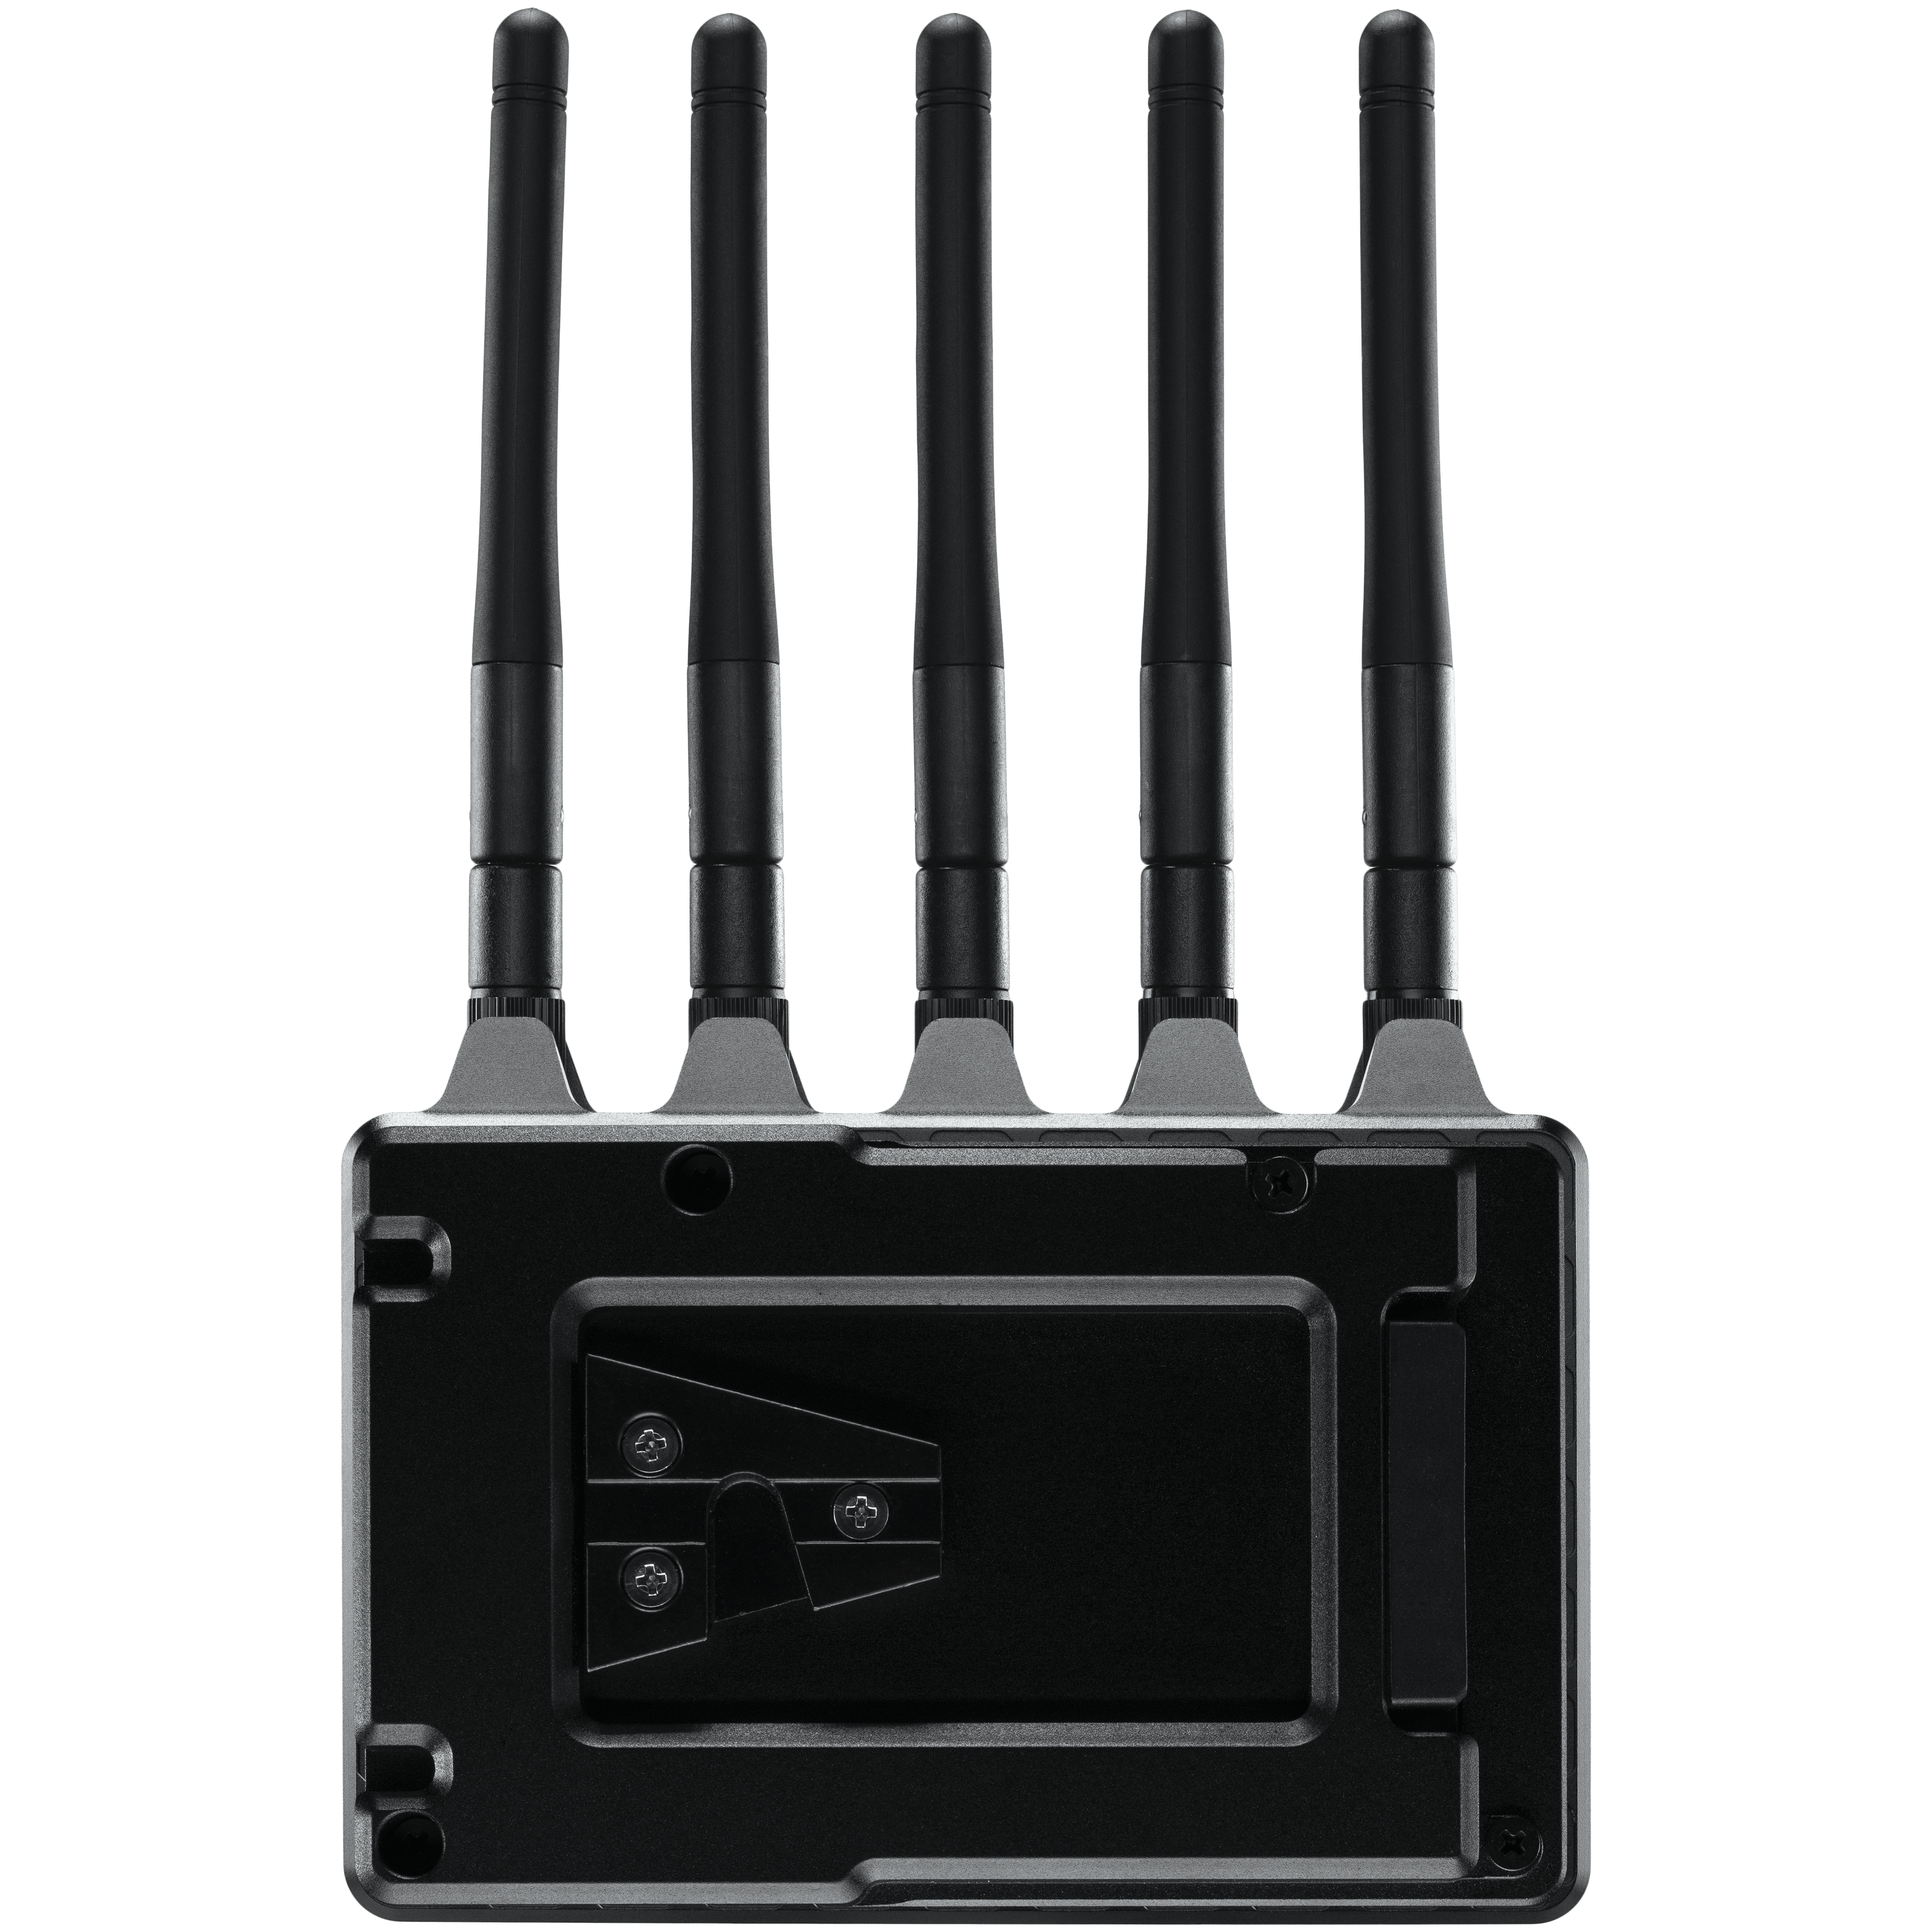 Teradek Bolt 4K LT 750 Wireless Transmitter/Receiver Deluxe V-Mount Kit